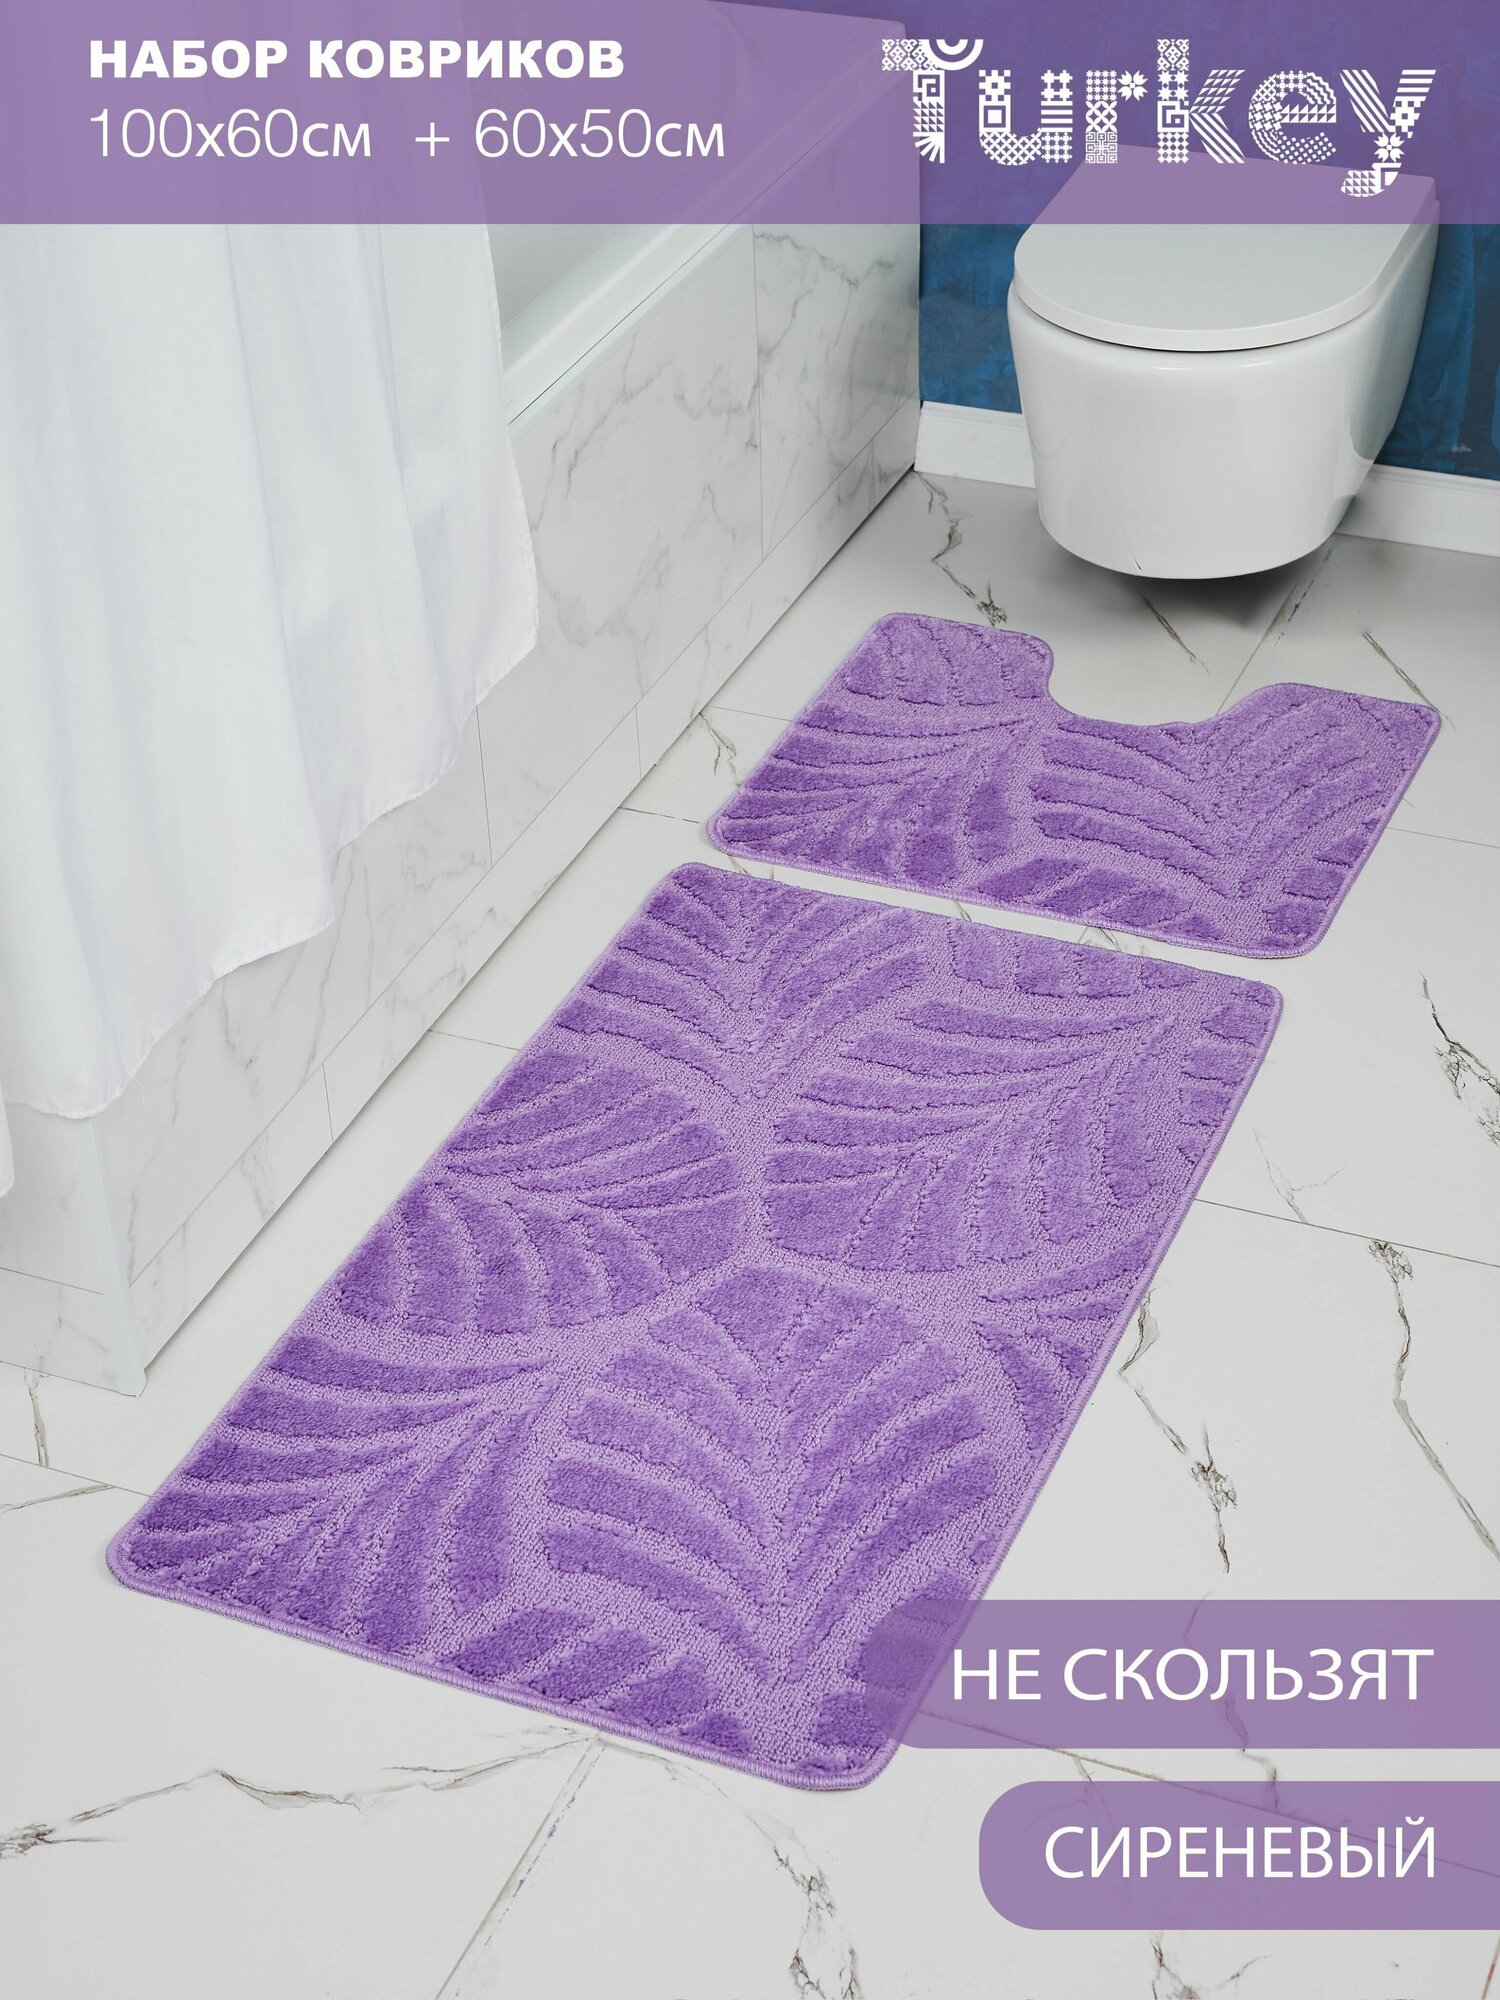 Набор противоскользящих ковриков для ванной и туалета Solin 100*60+50*60 2 шт.